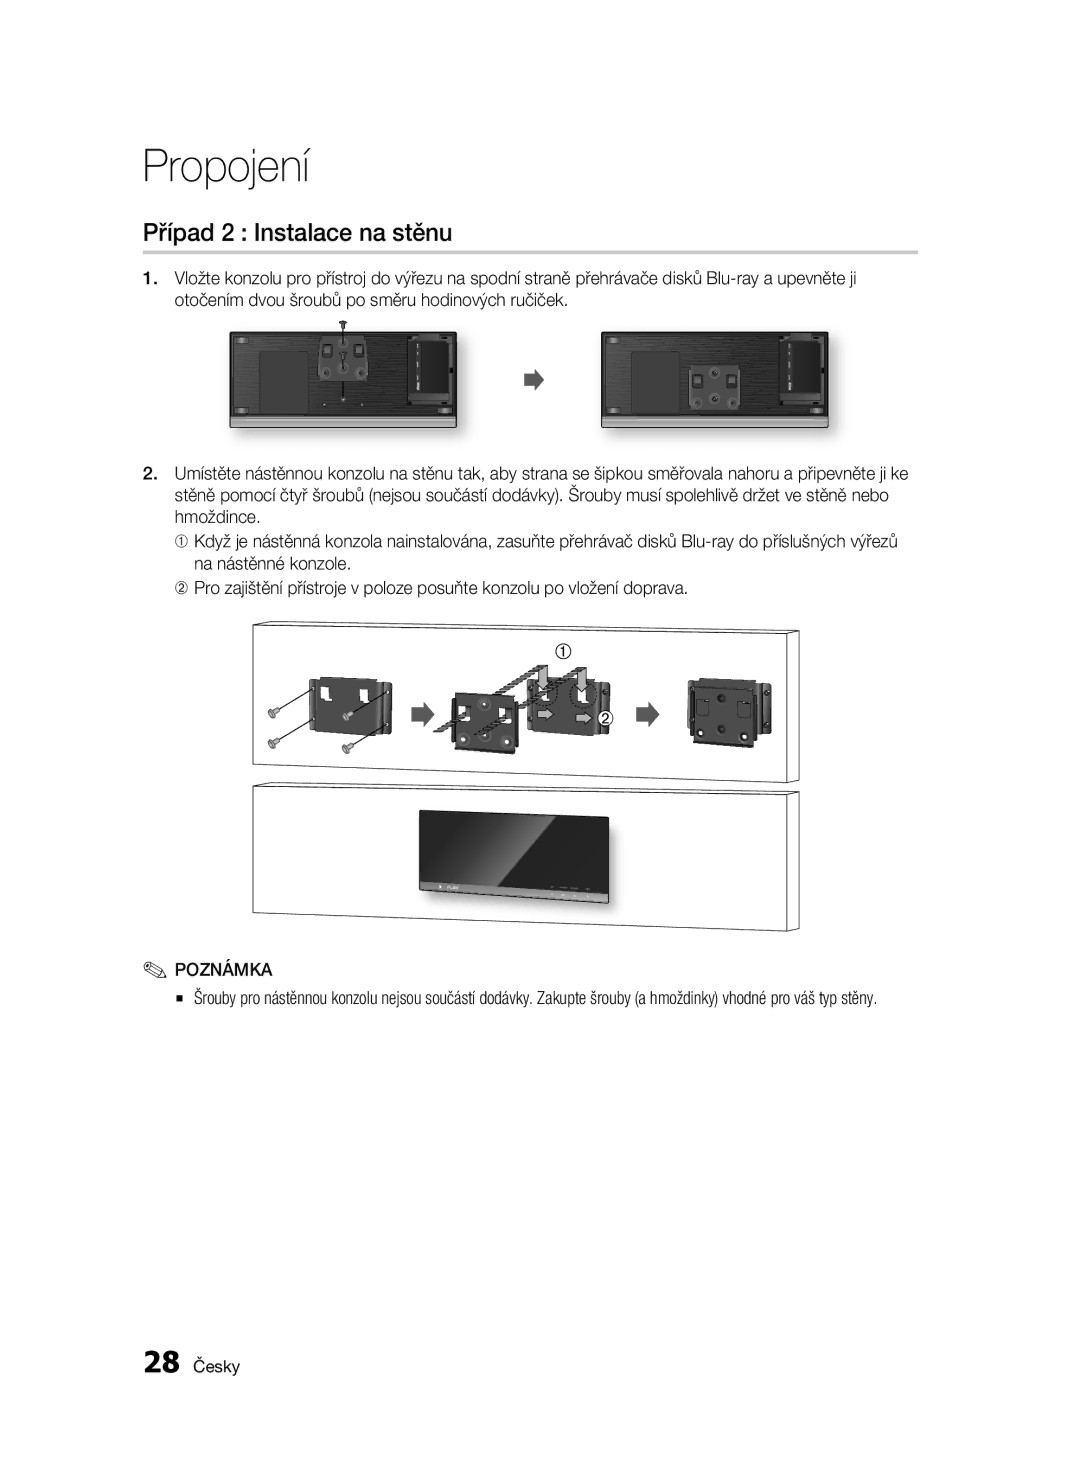 Samsung BD-C7500W/XEE, BD-C7500W/EDC manual Případ 2 Instalace na stěnu, 28 Česky 